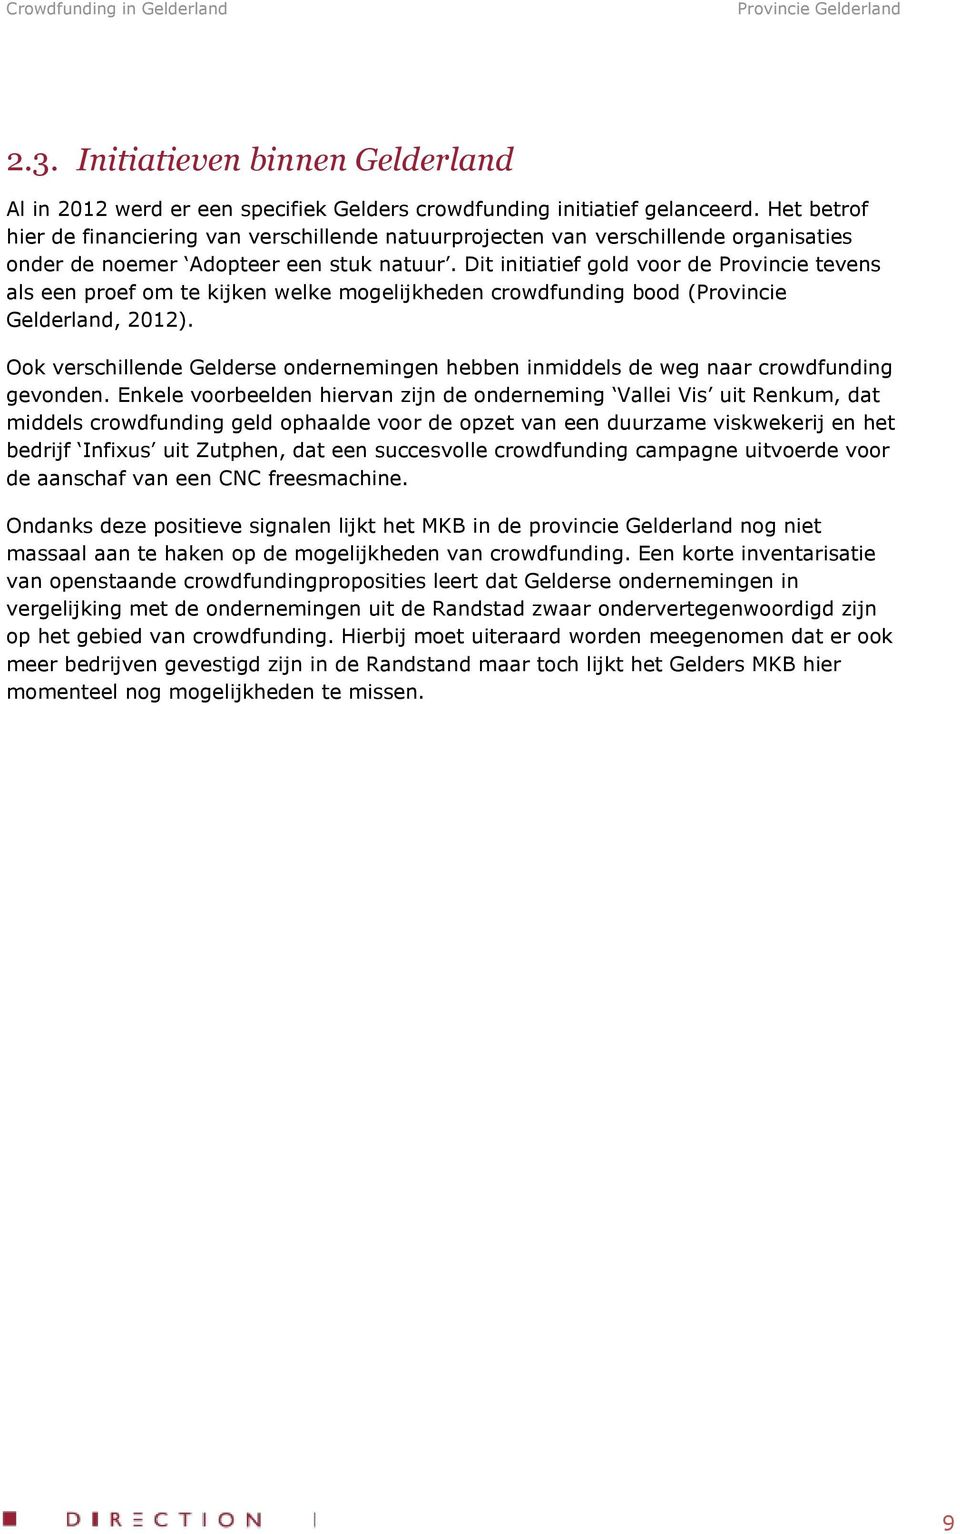 Dit initiatief gold voor de Provincie tevens als een proef om te kijken welke mogelijkheden crowdfunding bood (Provincie Gelderland, 2012).